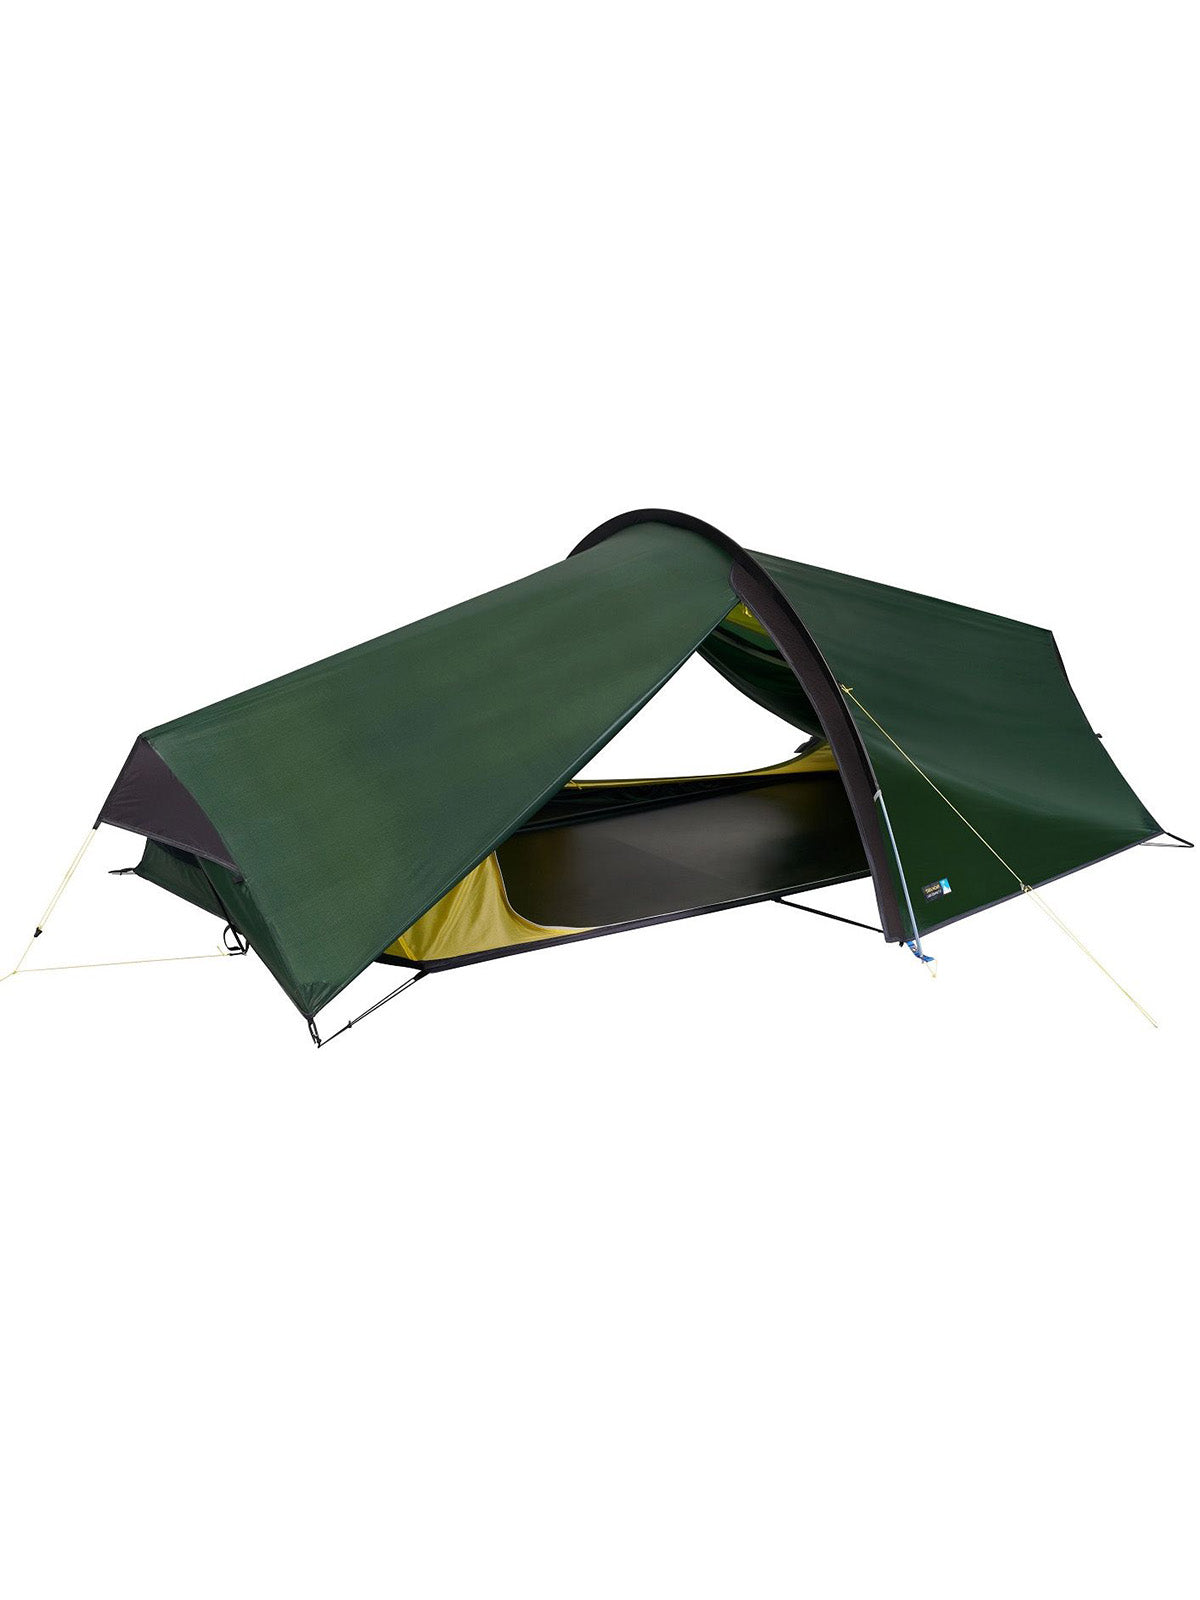 Terra Nova Laser Compact 2 Tent v2